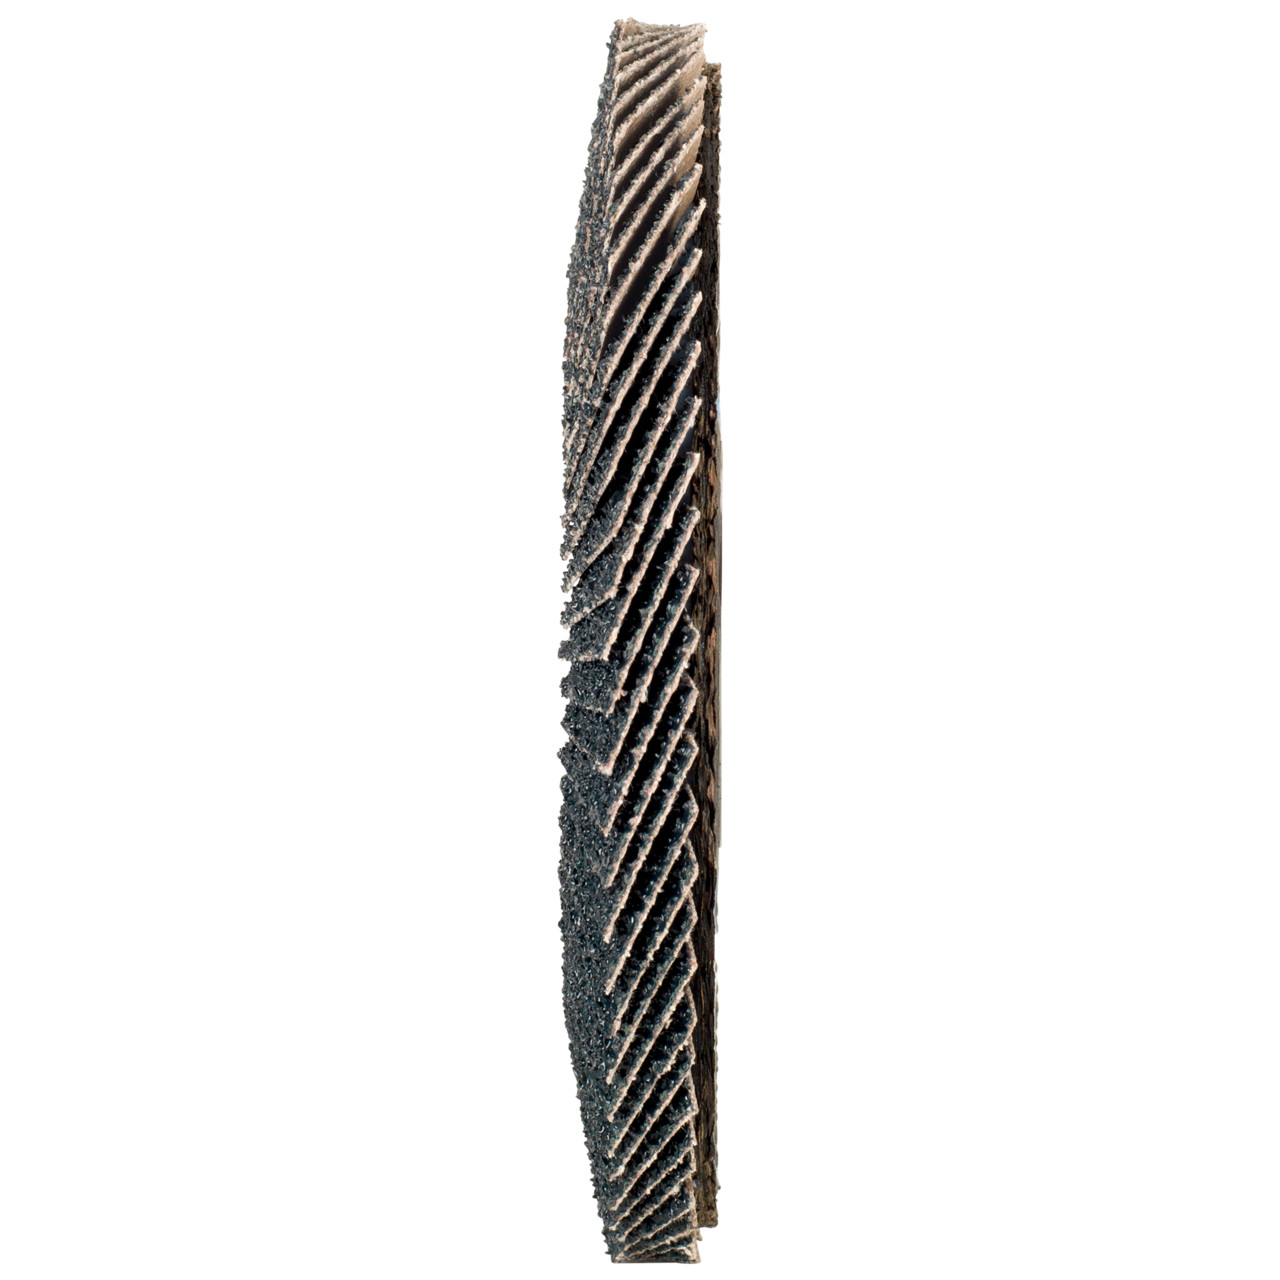 Rondella dentata Tyrolit DxH 115x22.2 2in1 per acciaio e acciaio inox, P120, forma: 28A - versione diritta (versione con corpo portante in fibra di vetro), Art. 846344